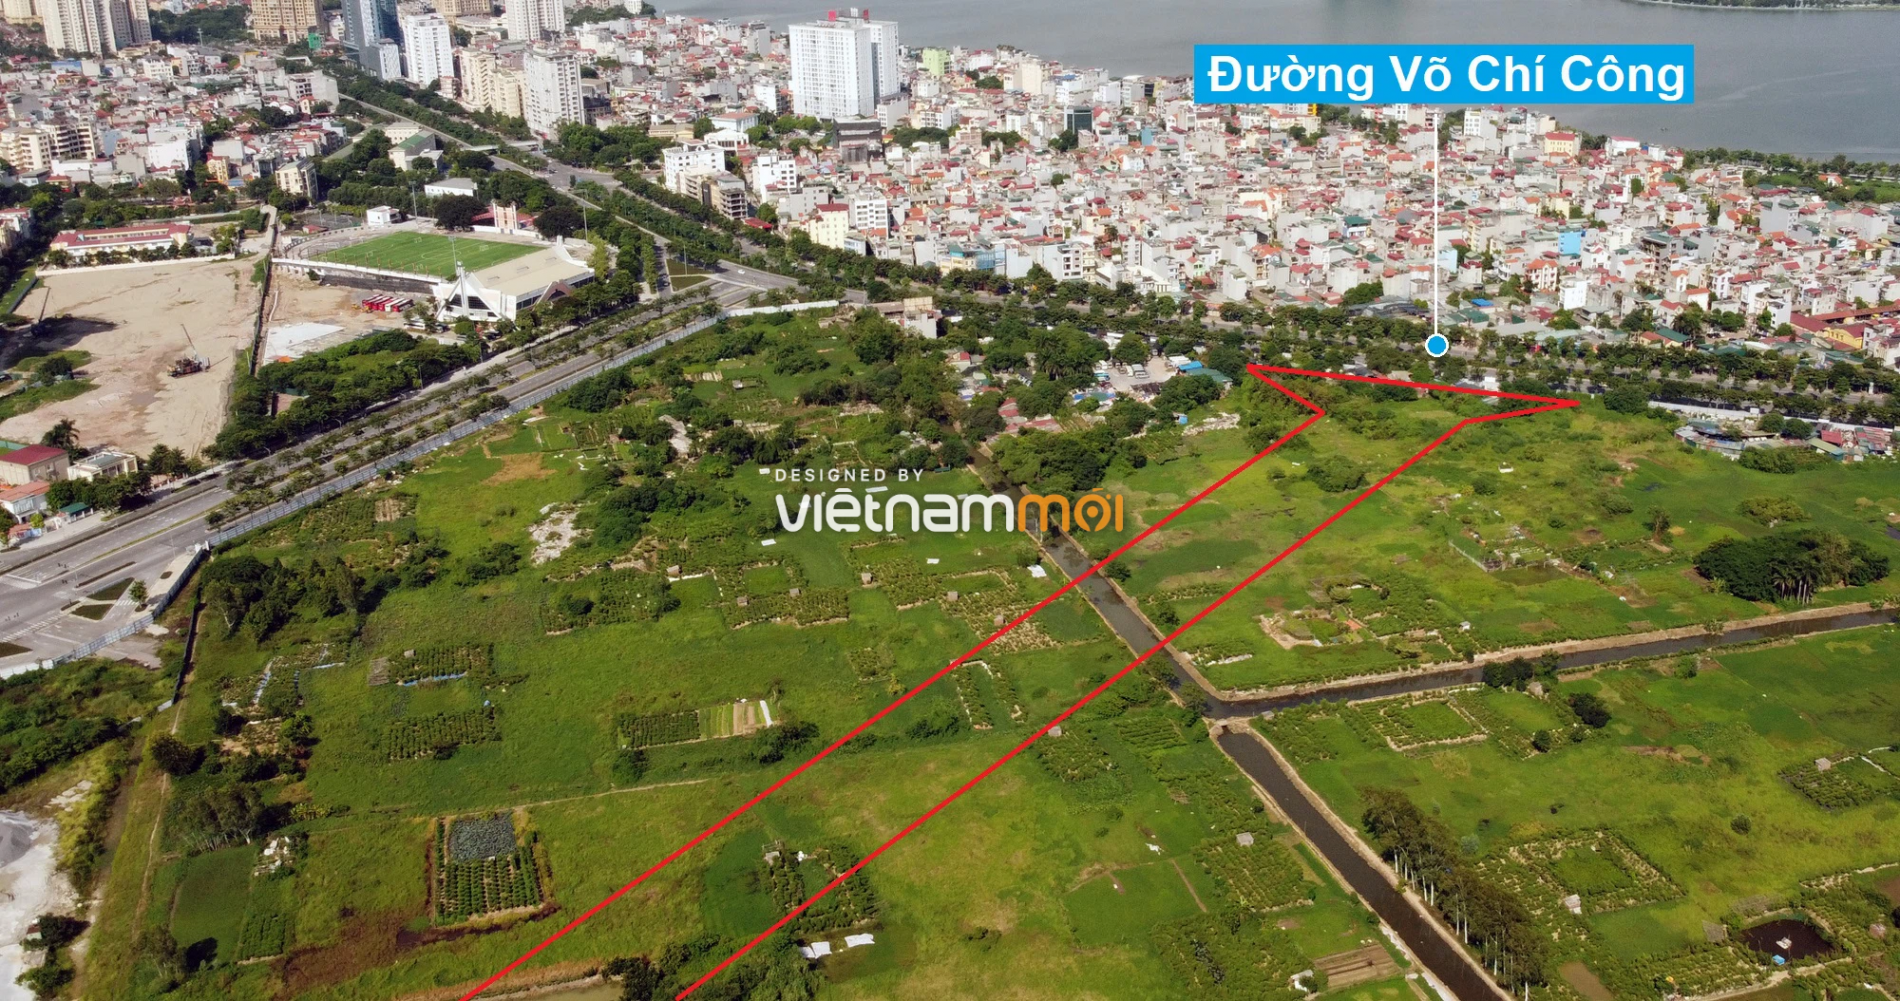 Những khu đất sắp thu hồi để mở đường ở quận Tây Hồ, Hà Nội (phần 2) - Ảnh 5.